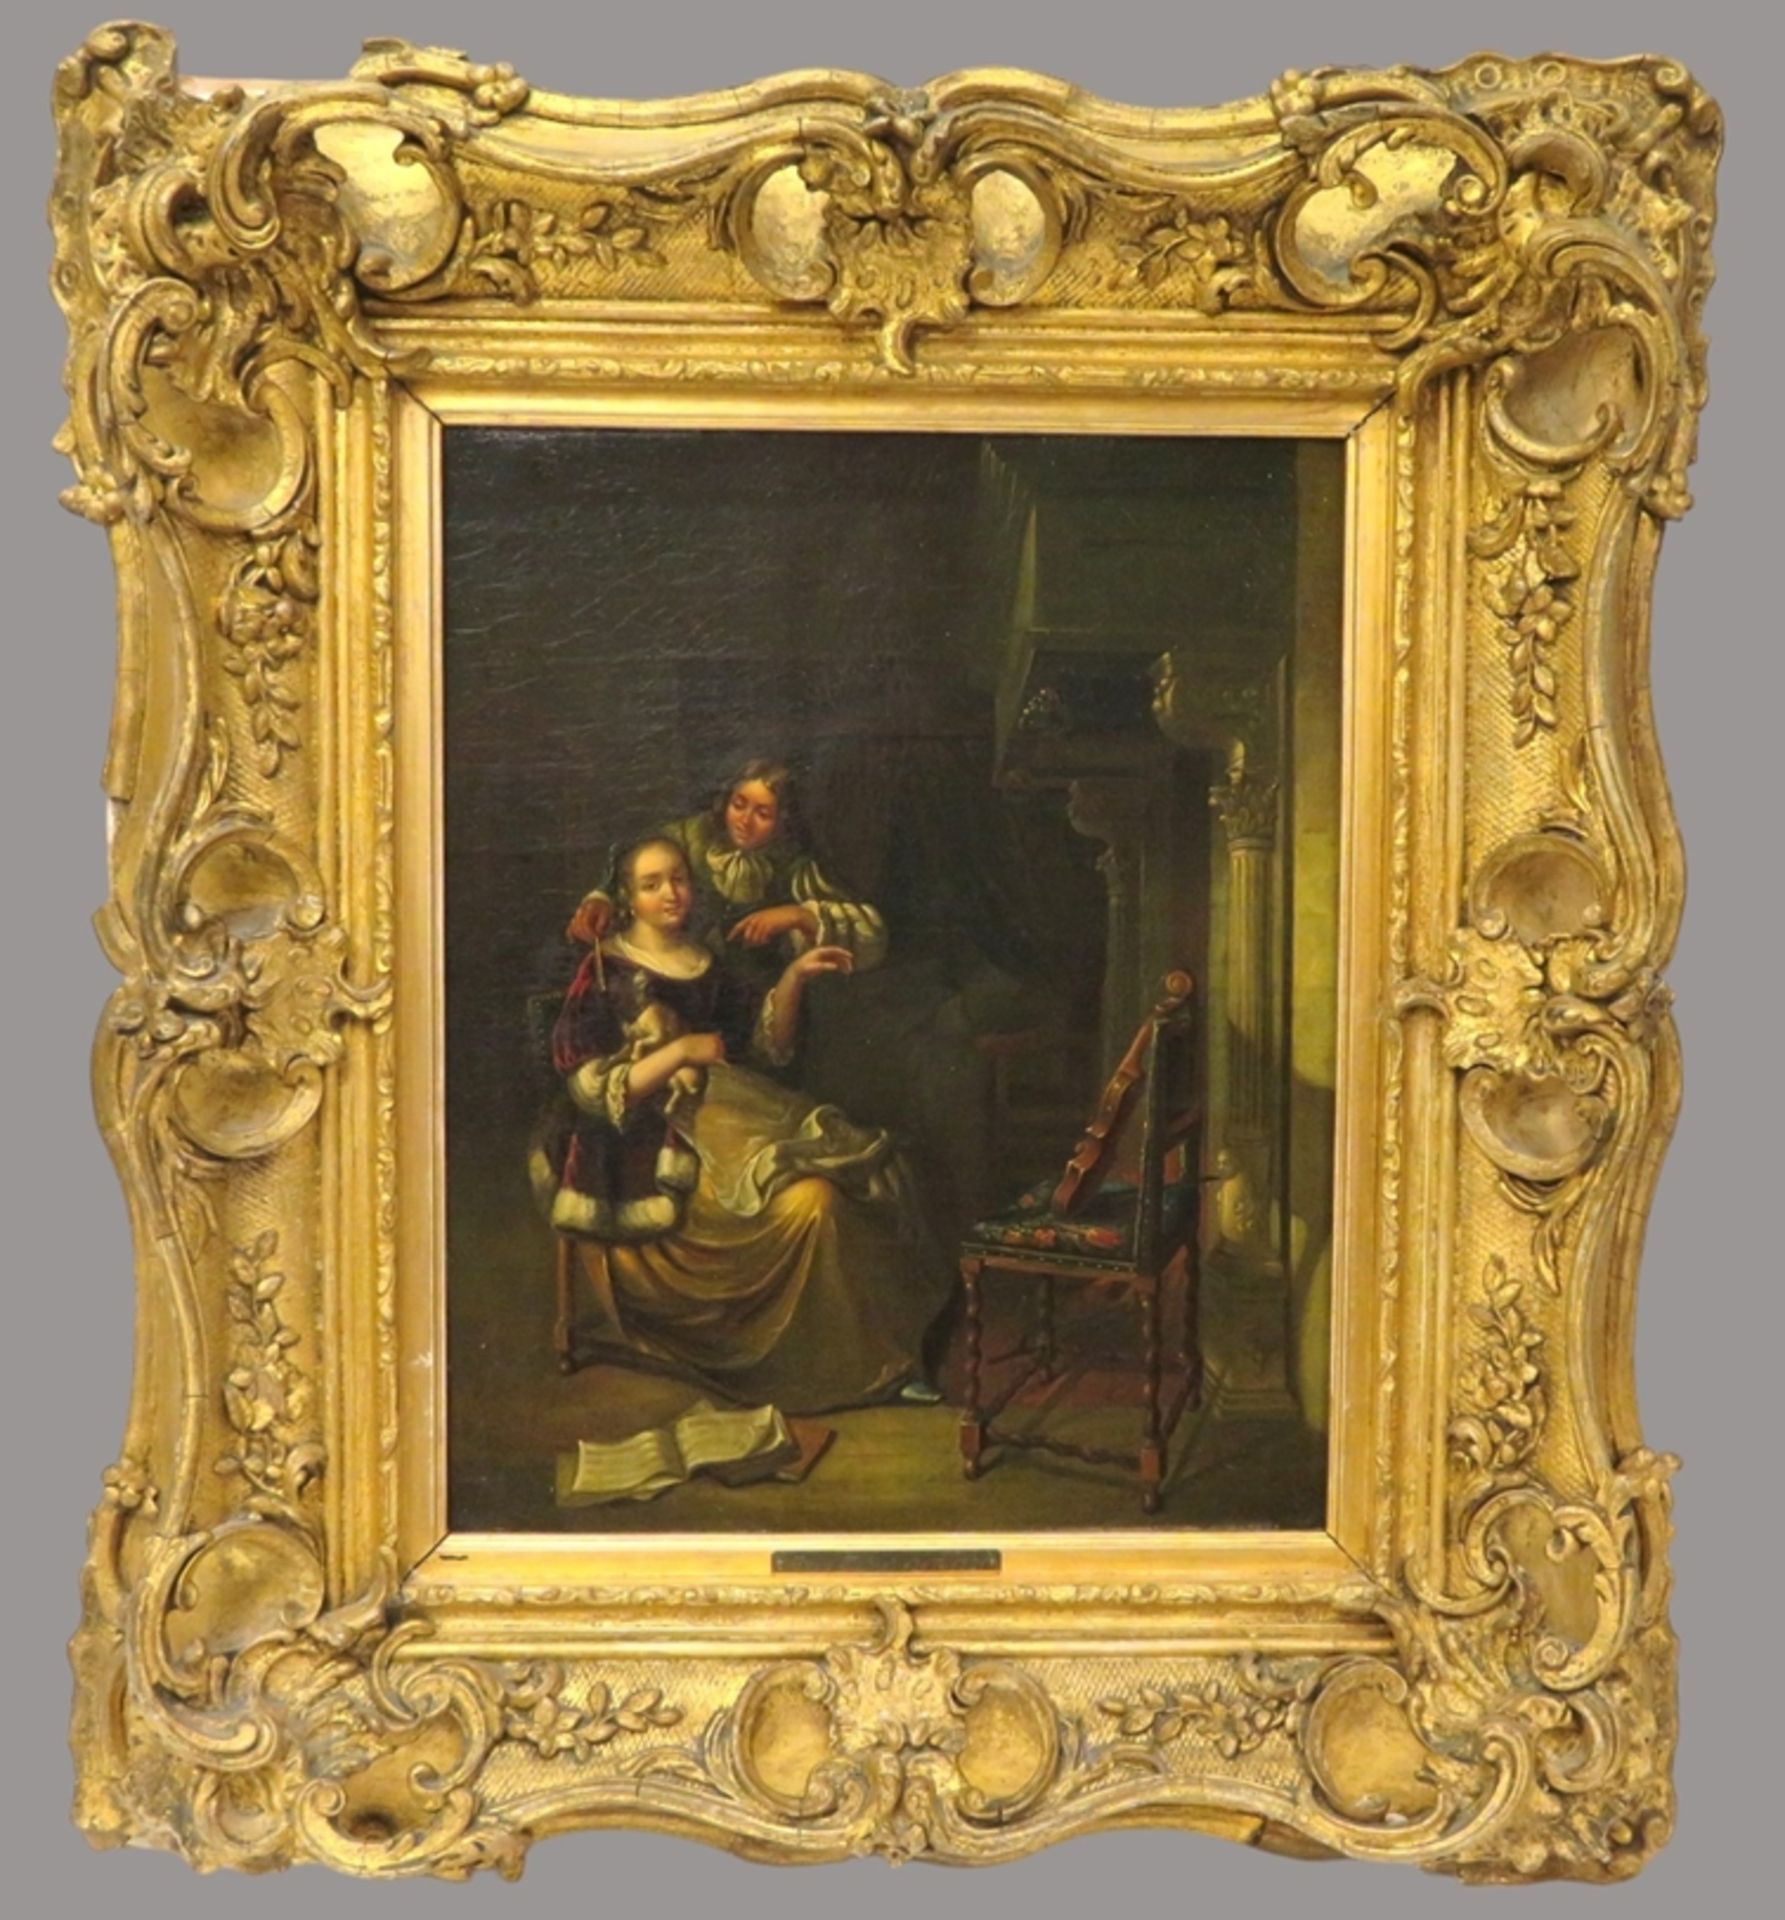 Unbekannt in der Art Gerard ter Borchs/Terborchs (1617 - 1681, Zwolle - Deventer), 19. Jahrhundert, - Bild 4 aus 5